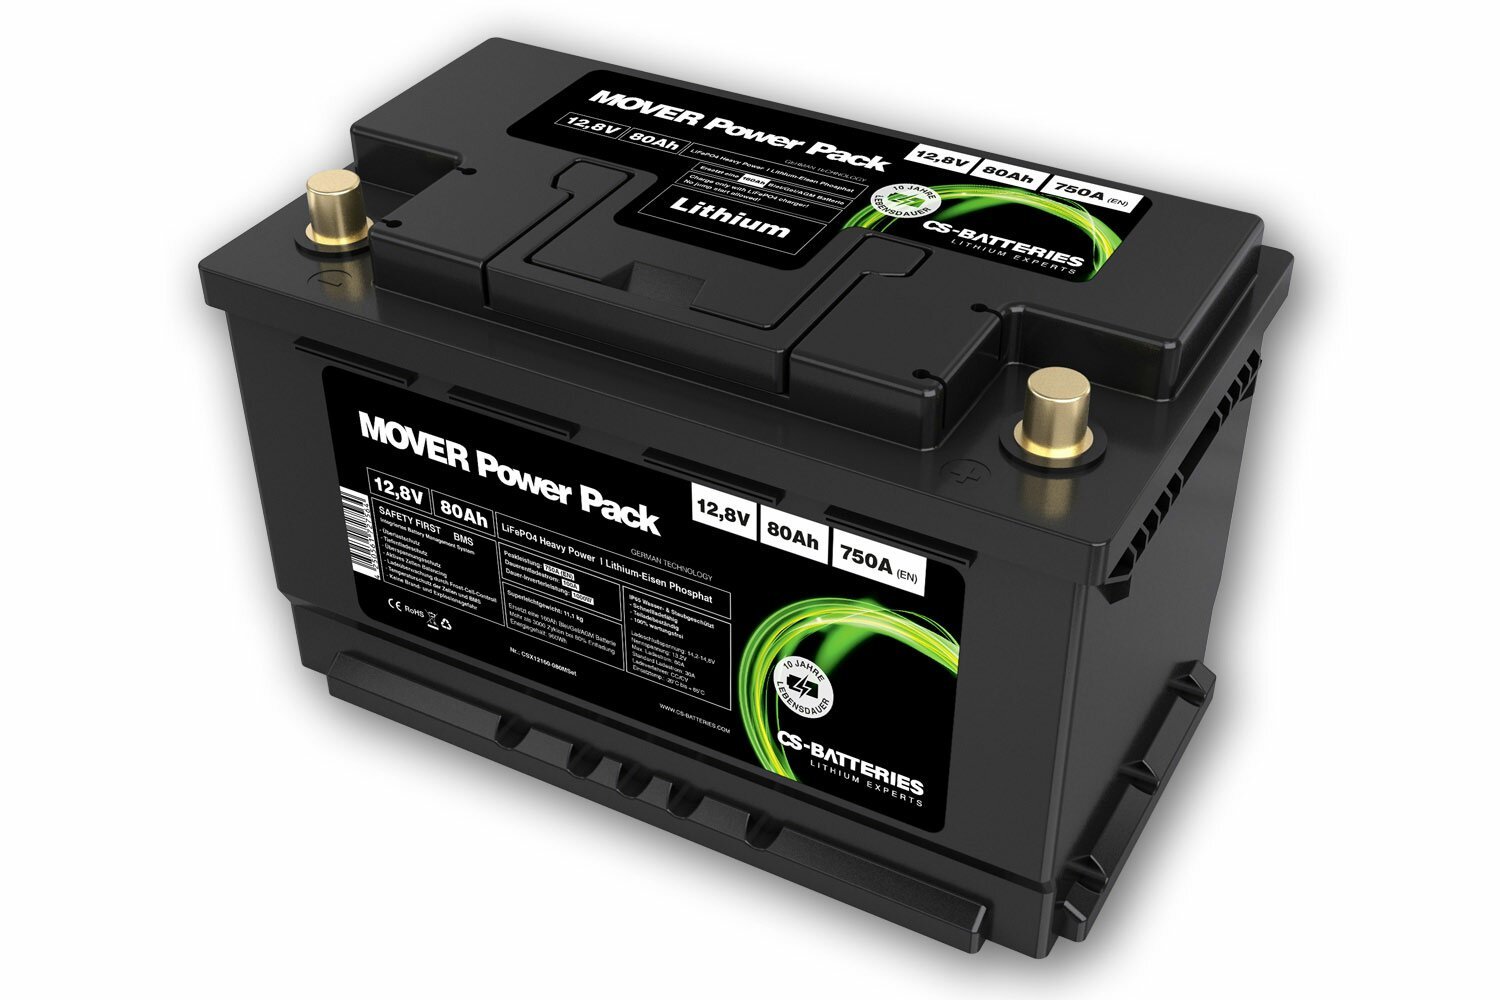 CS Lithium Lifepo4 Mover Power Pack 12.8V / 80AH / PB -EQ 120AH - ~ 10.6kg